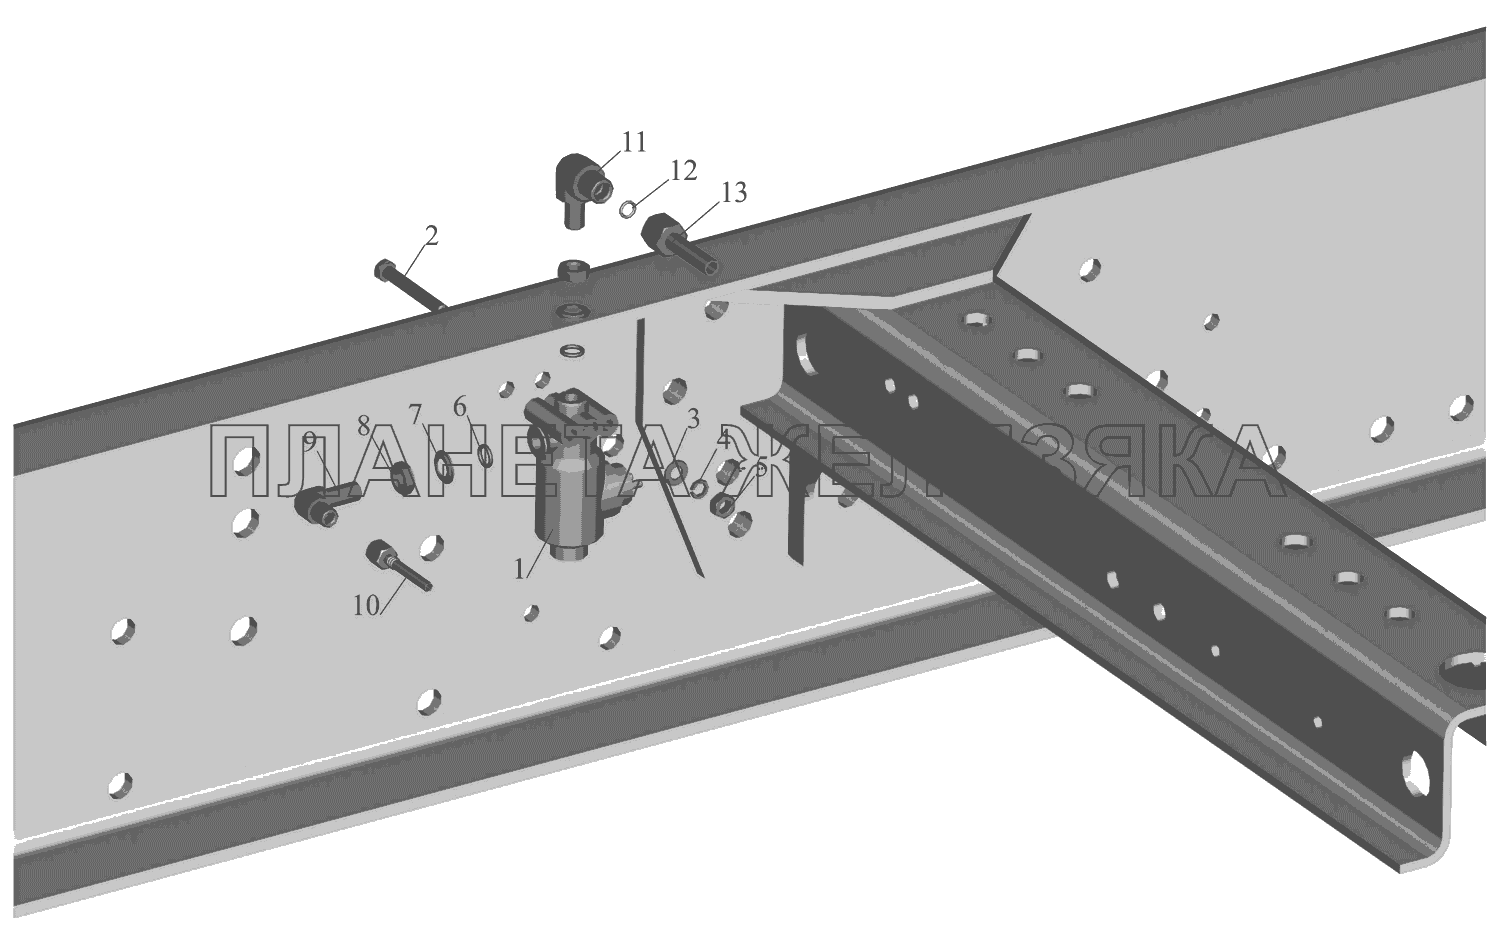 Установка тормозного клапана ASR и присоединительной арматуры МАЗ-651669-320 (340)